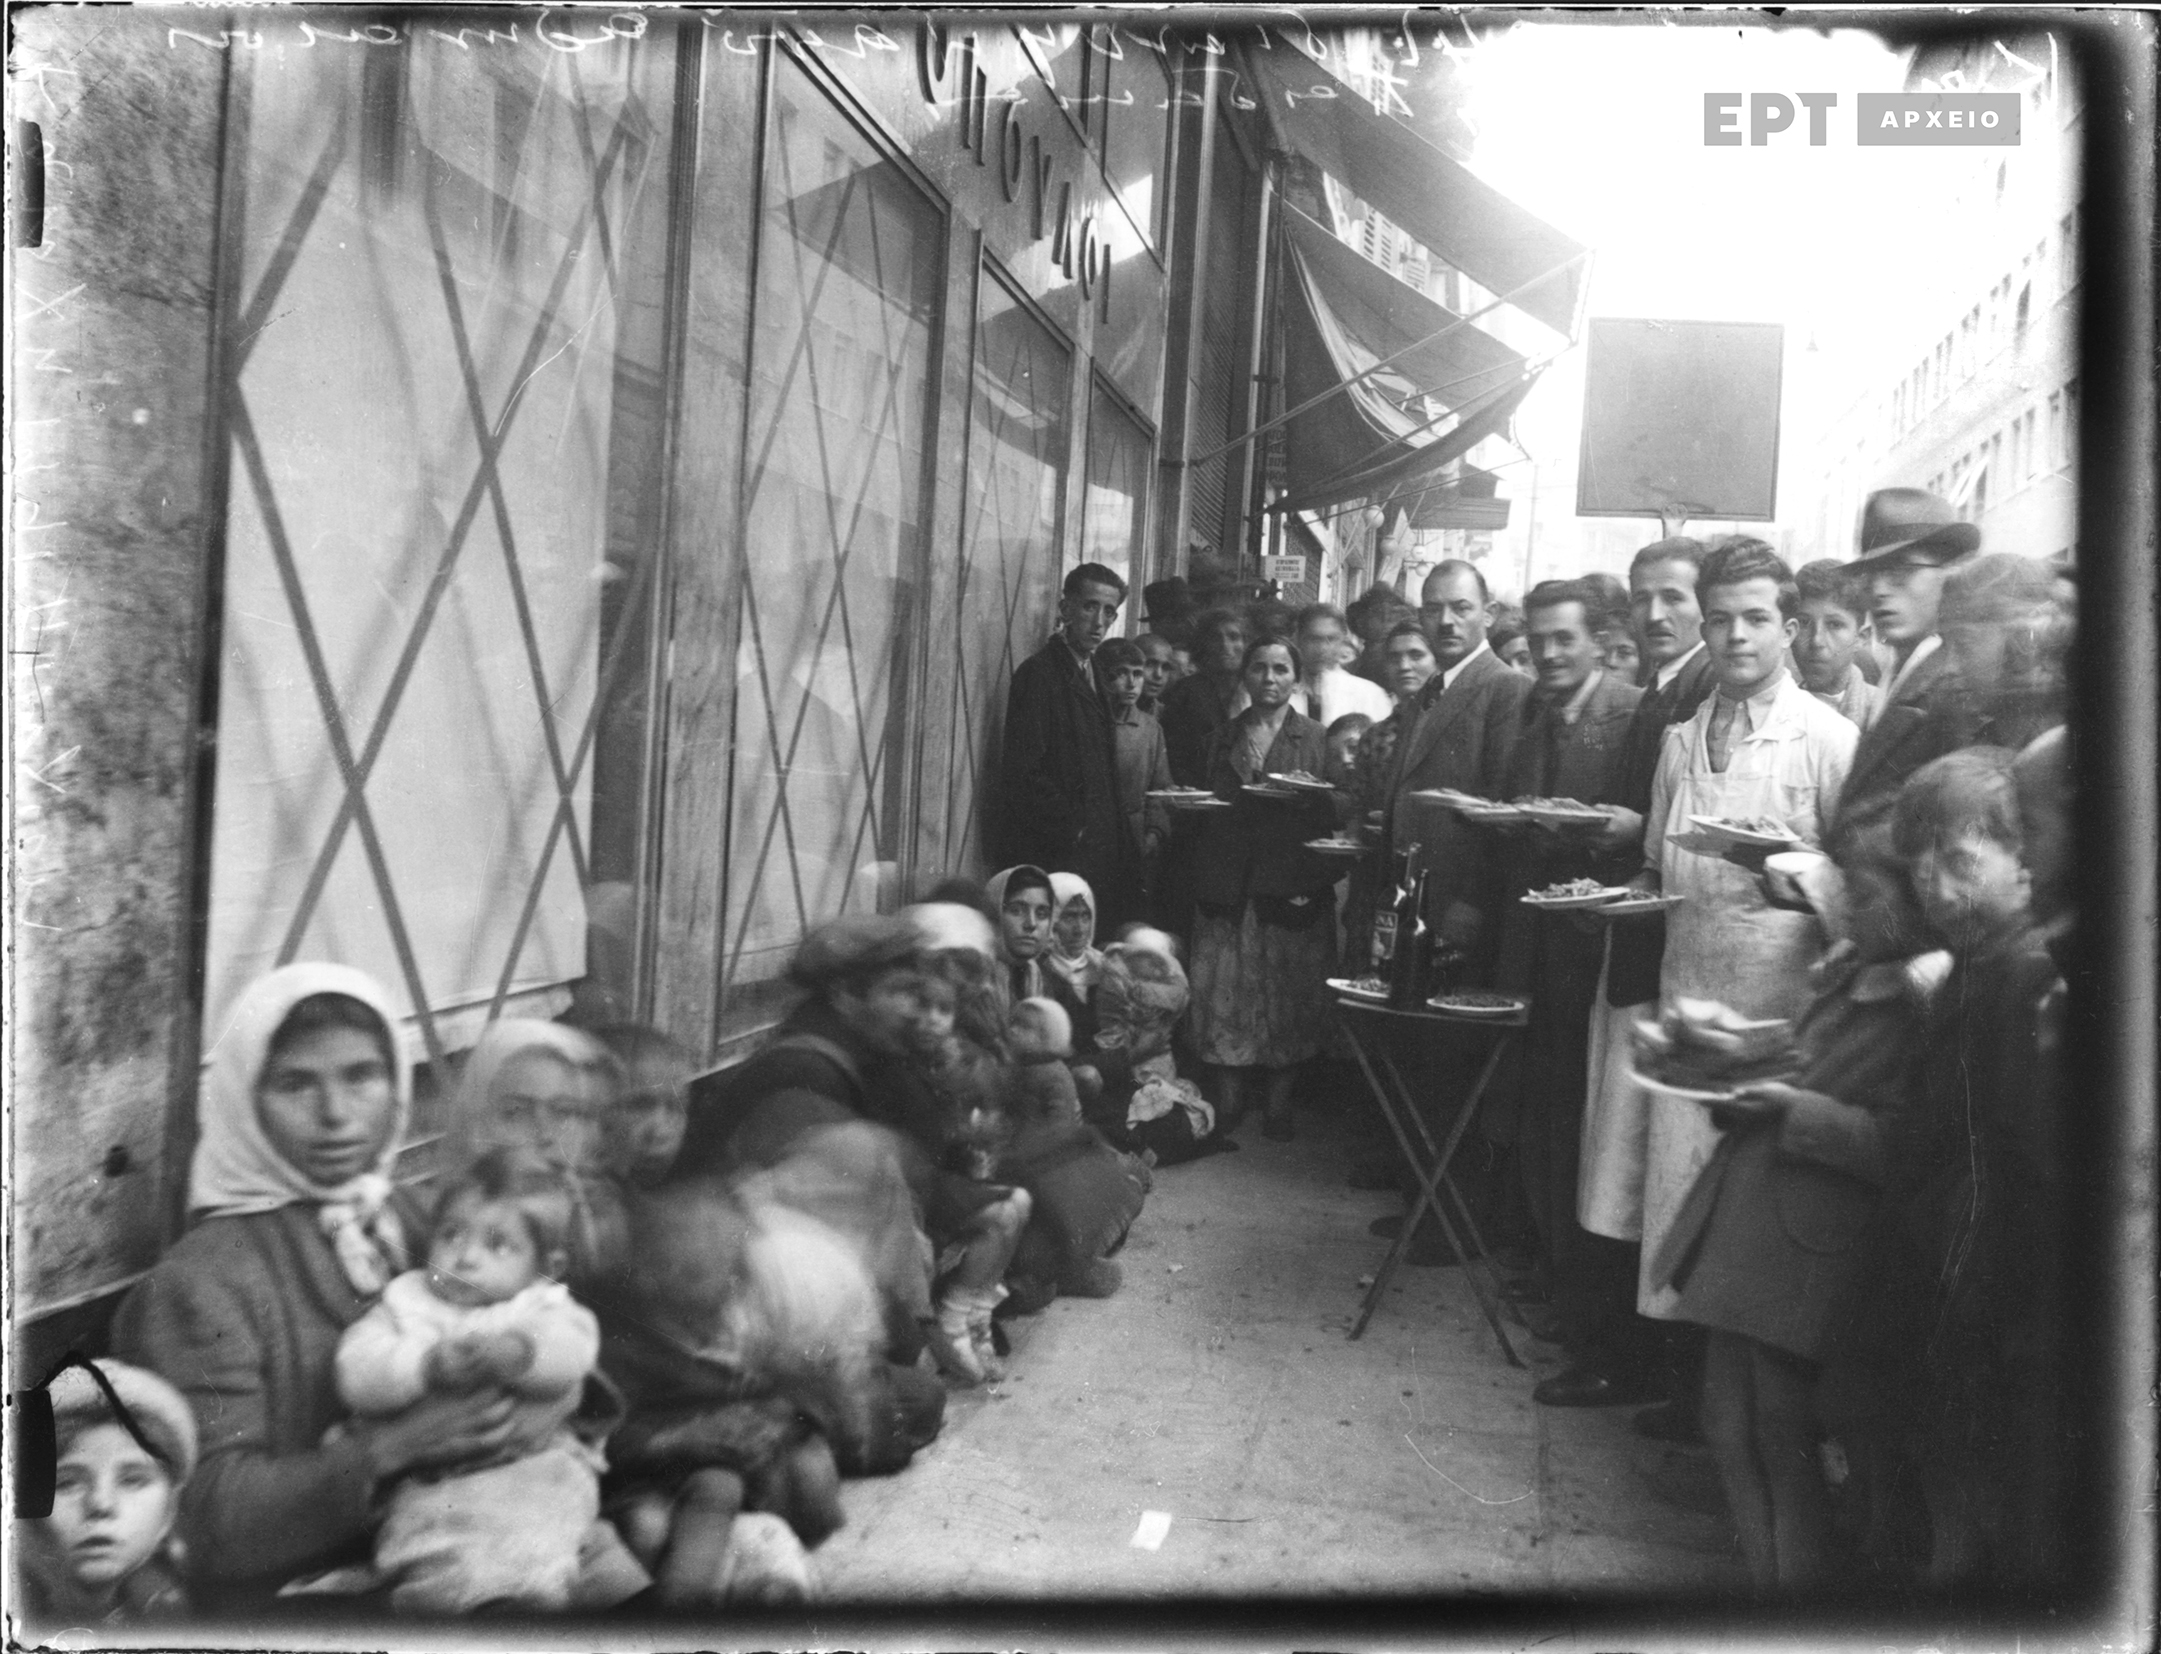 Αθήνα. Χαυτεία. Πρόσφυγες καθισμένοι έξω από το κατάστημα Αφοί Λαμπρόπουλοι περιμένοντας να πραγματοποιηθεί η διανομή συσσιτίου. Πολίτες κρατούν στα χέρια τους πιάτα με φαγητό και ψωμί. Πλήθος κόσμου είναι συγκεντρωμένο. Συλλογή Πέτρου Πουλίδη, Φωτογραφικό Αρχείο ΕΡΤ.